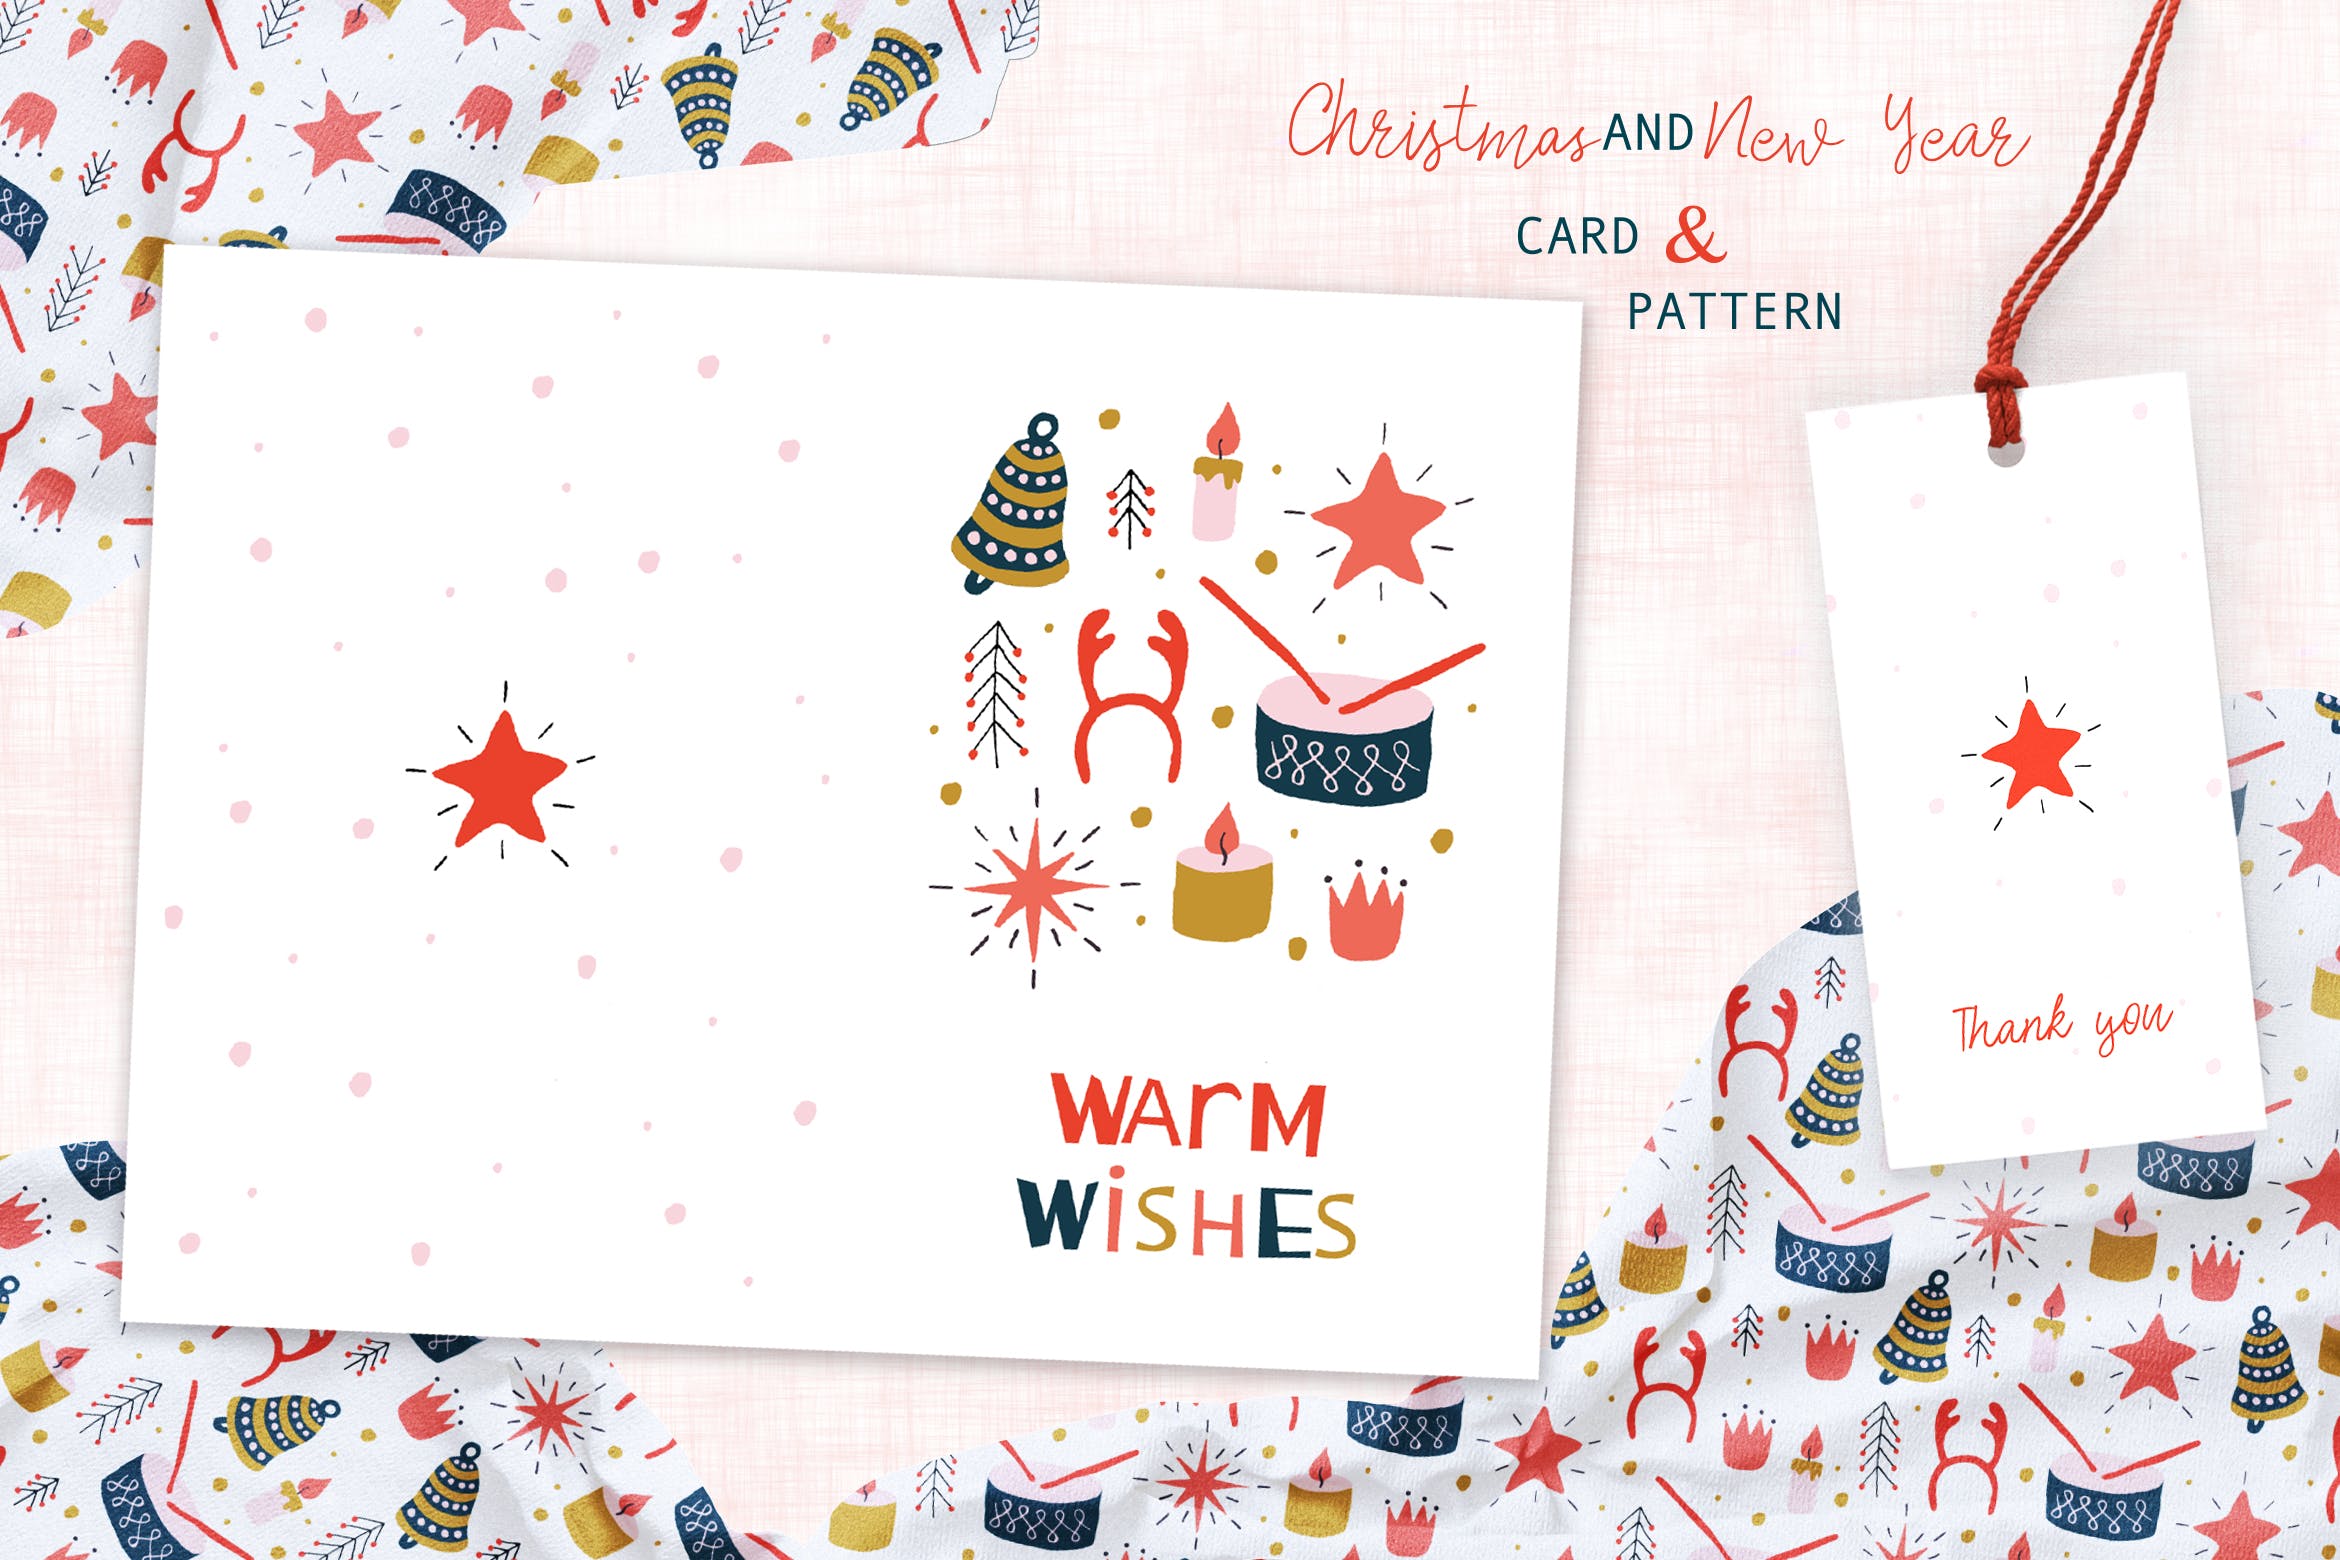 圣诞玩具手绘图案背景素材/贺卡设计模板 Christmas Toys Greeting Card and Pattern插图